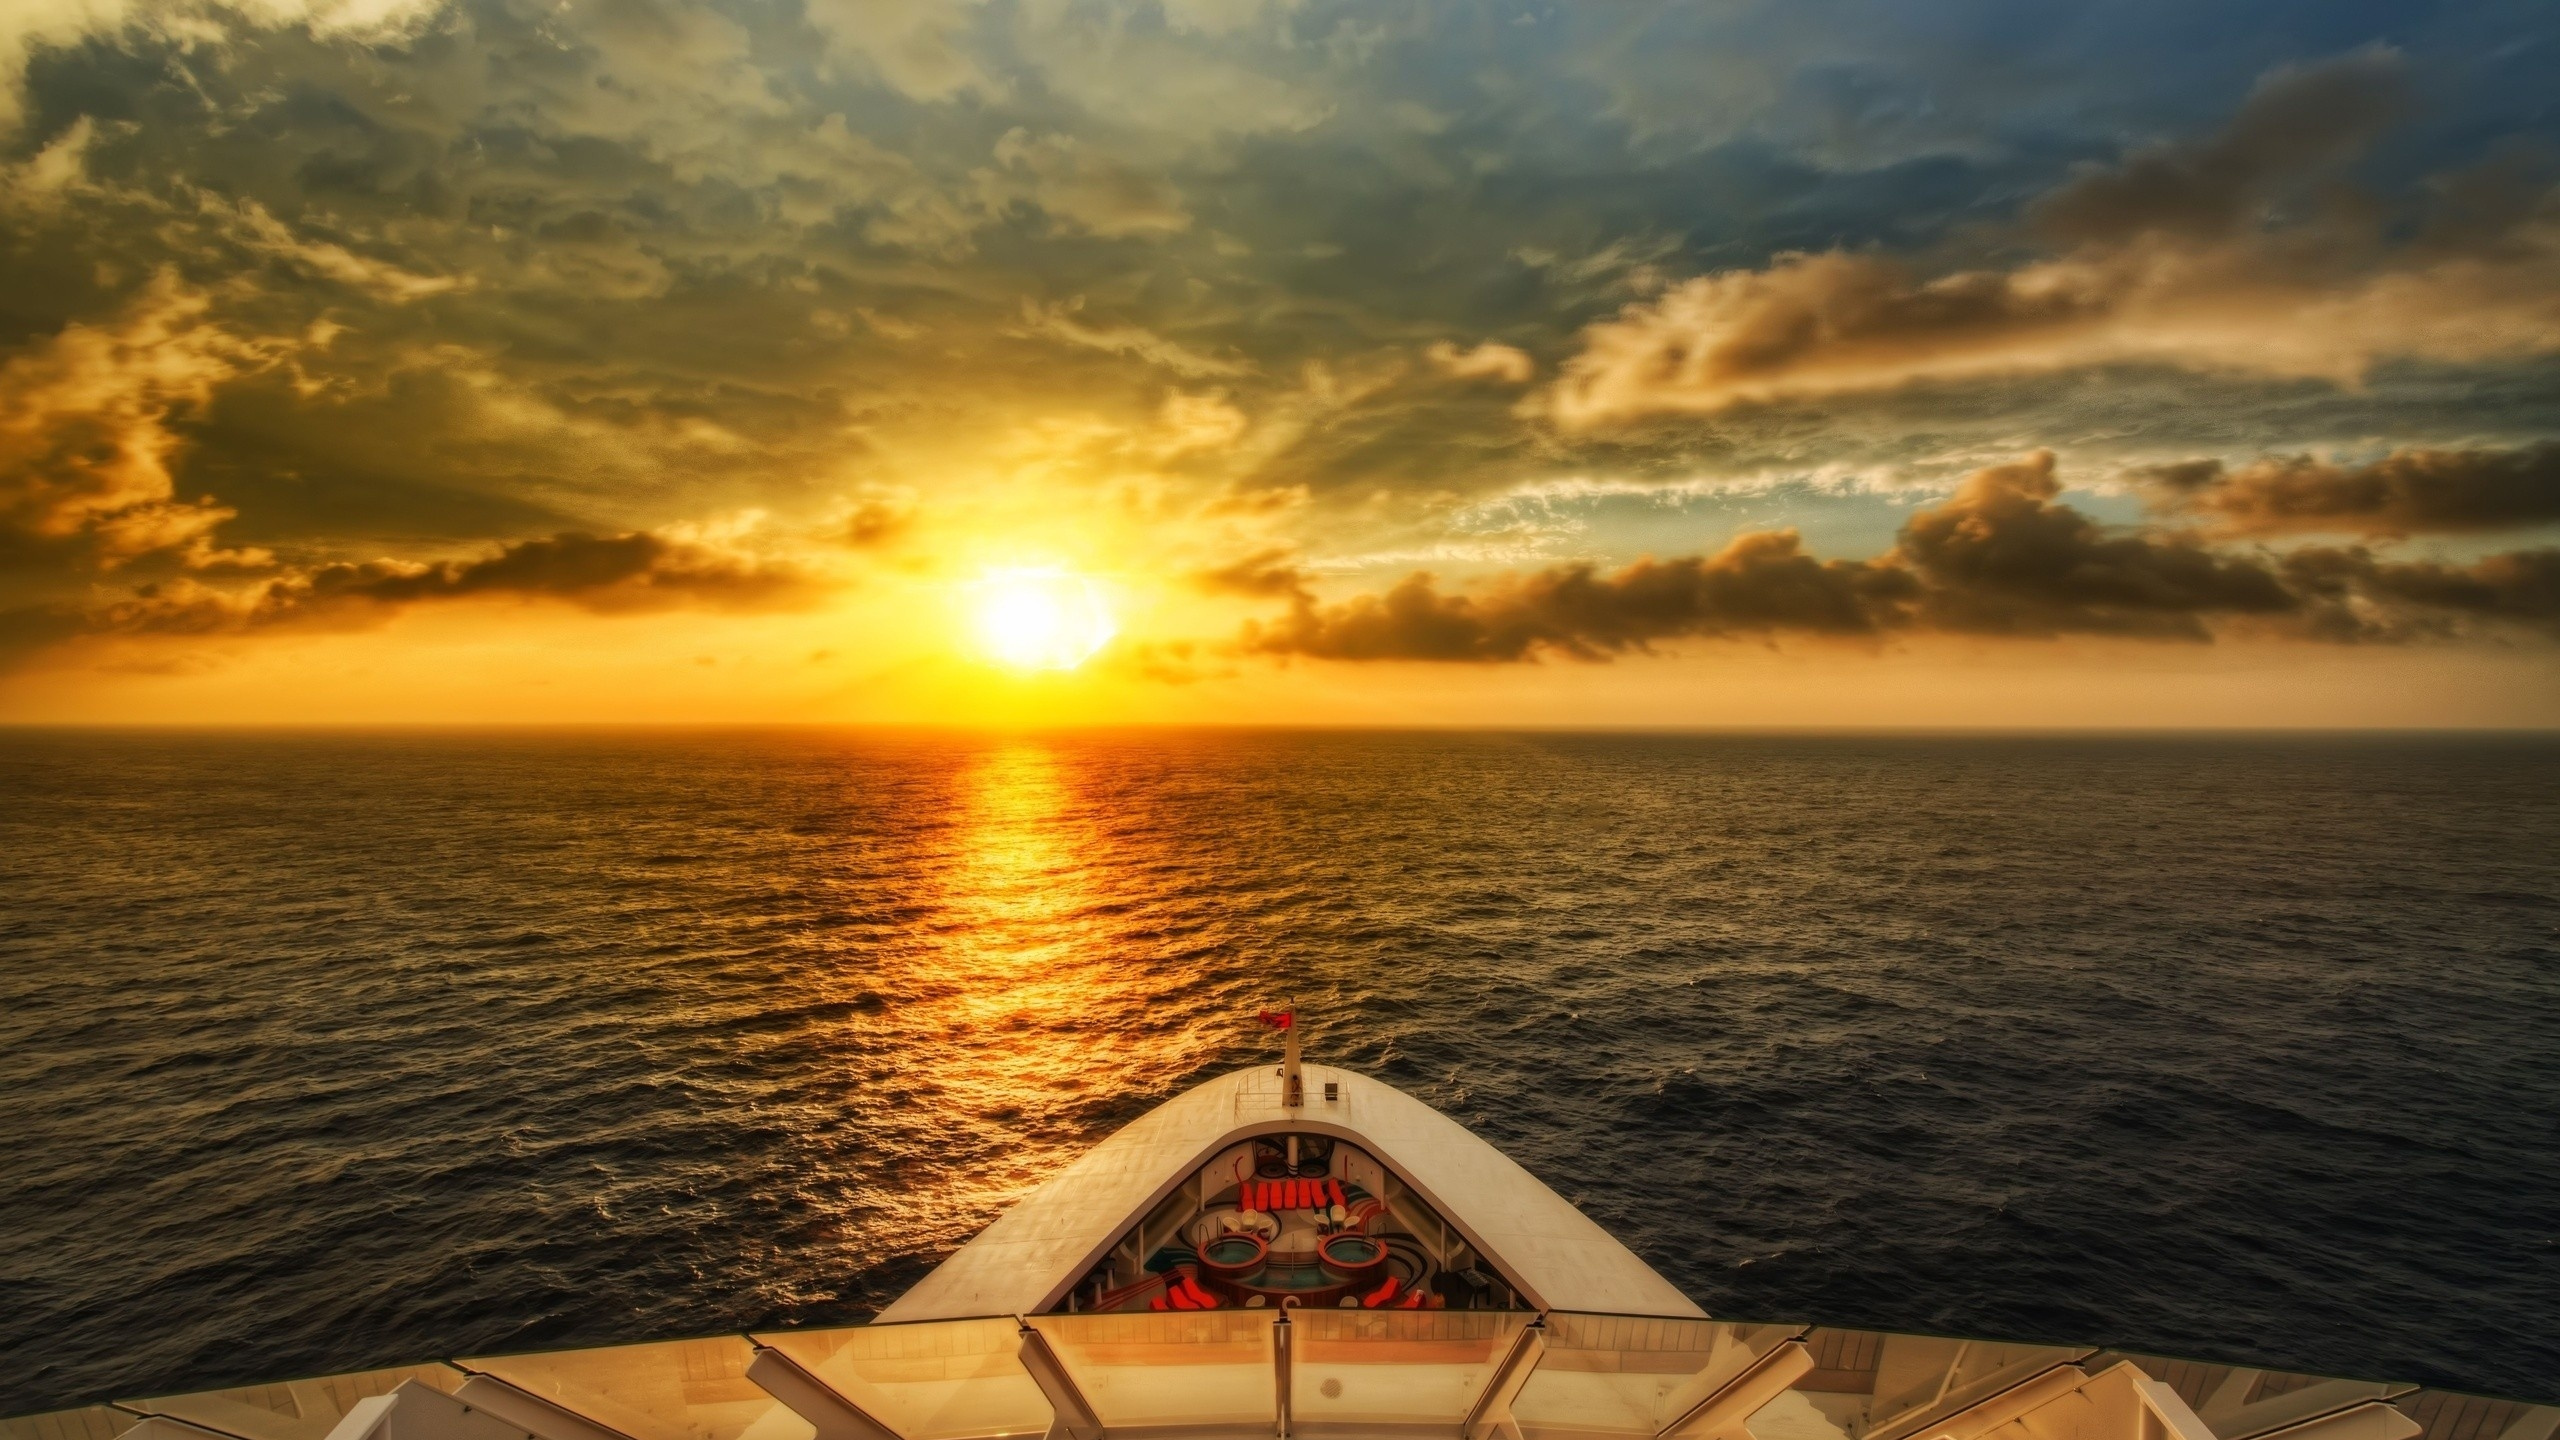 Barco Blanco en el Mar Durante la Puesta de Sol. Wallpaper in 2560x1440 Resolution